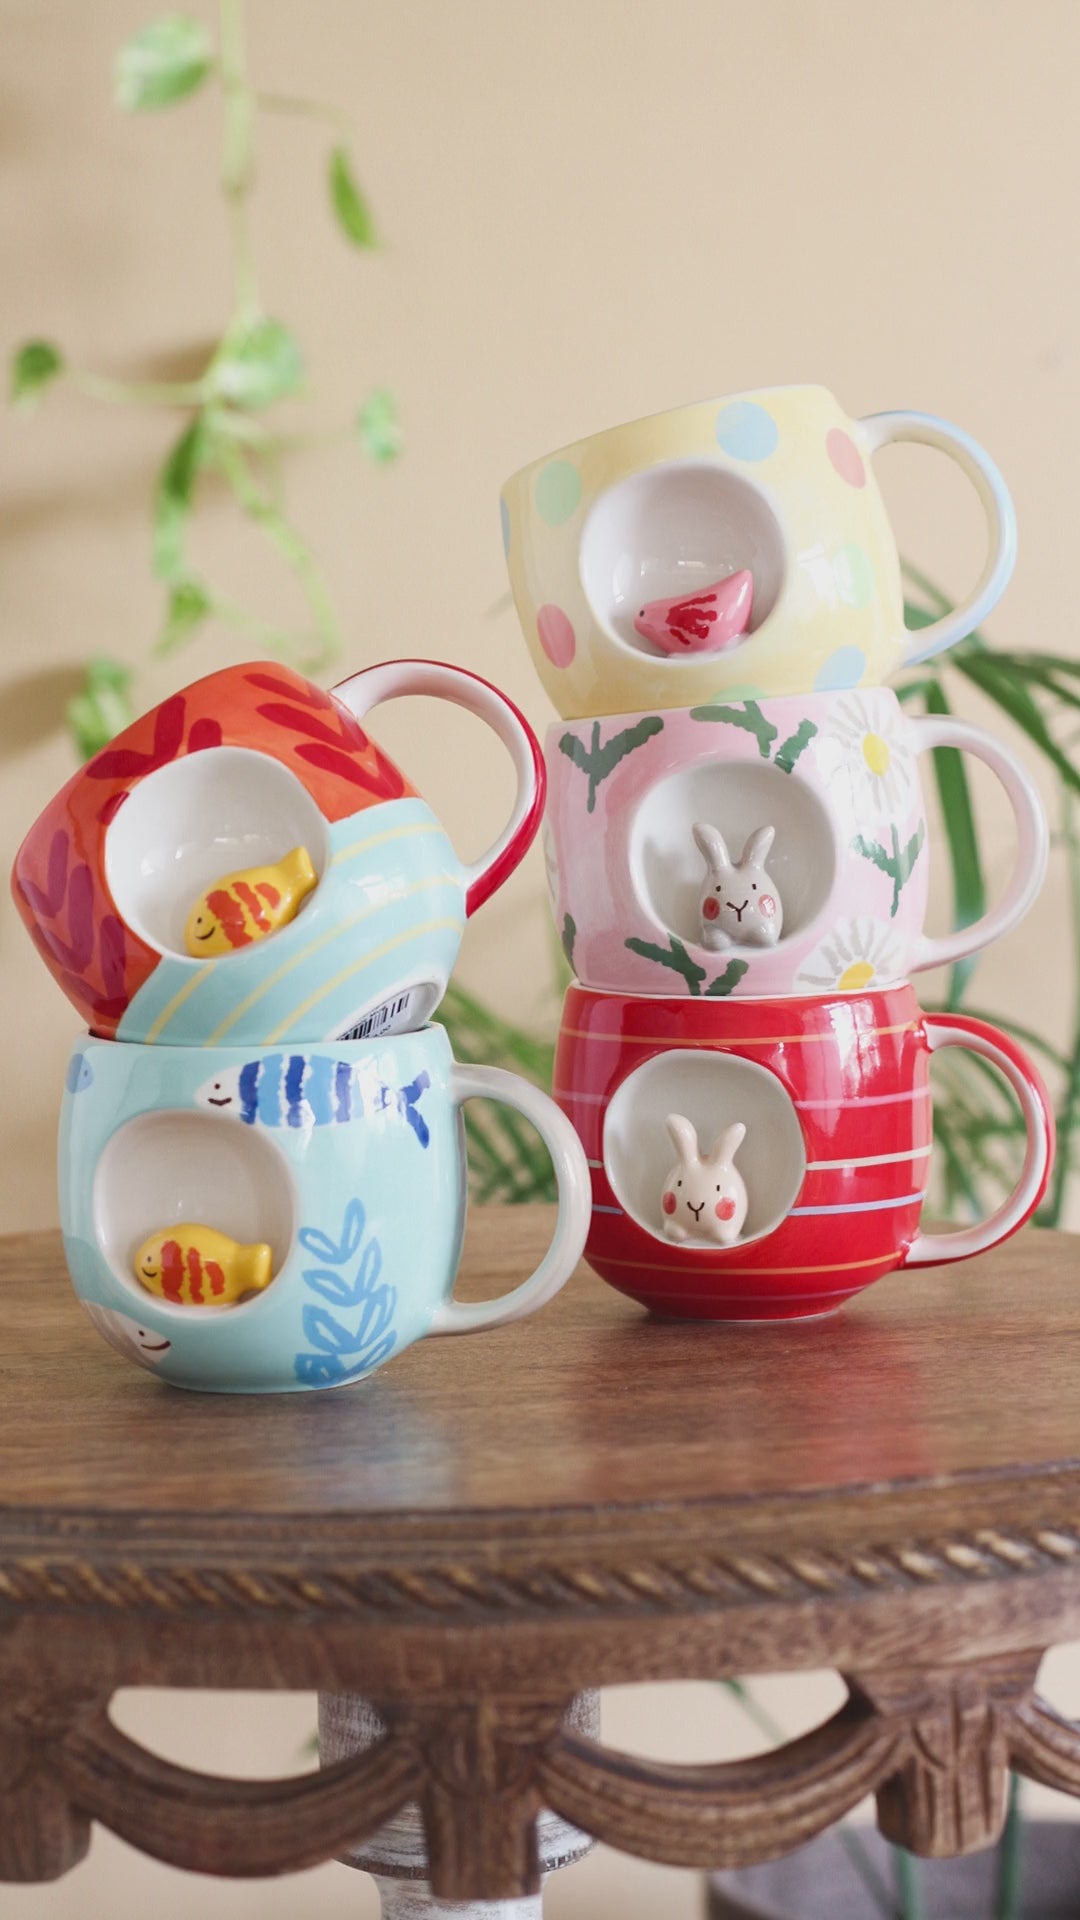 Polka Dot Bird Handpainted Ceramic Mug